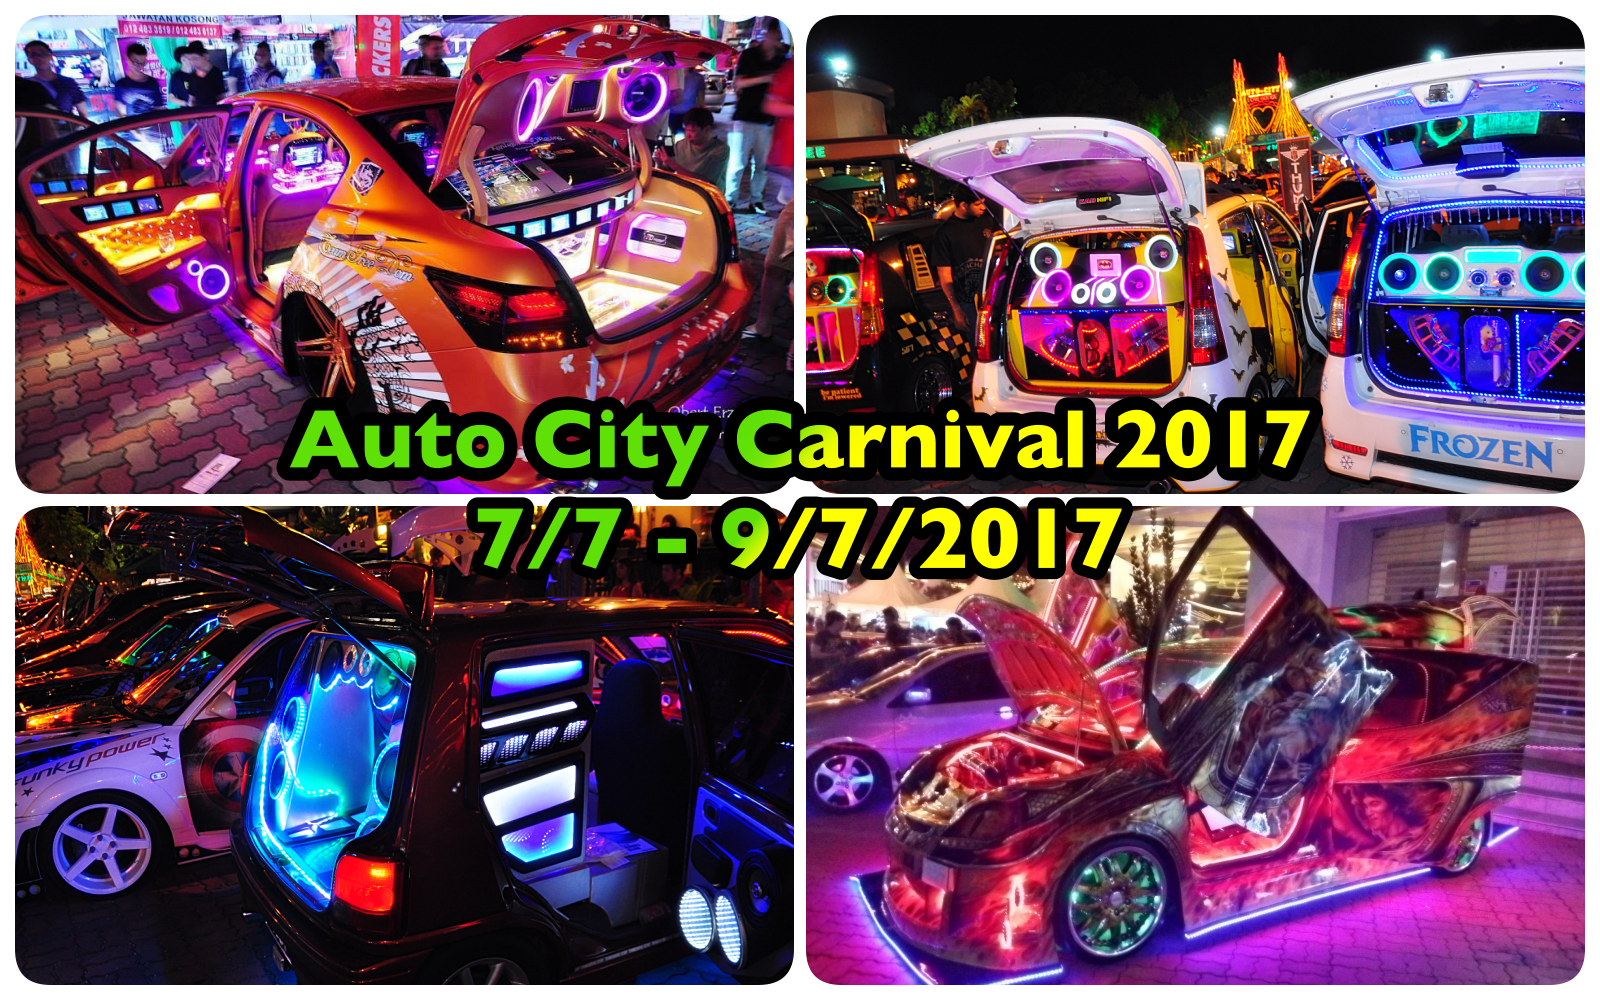 来料！来料！#2017AutoCity柔府汽车城嘉年华会来料！你准备好了吗？